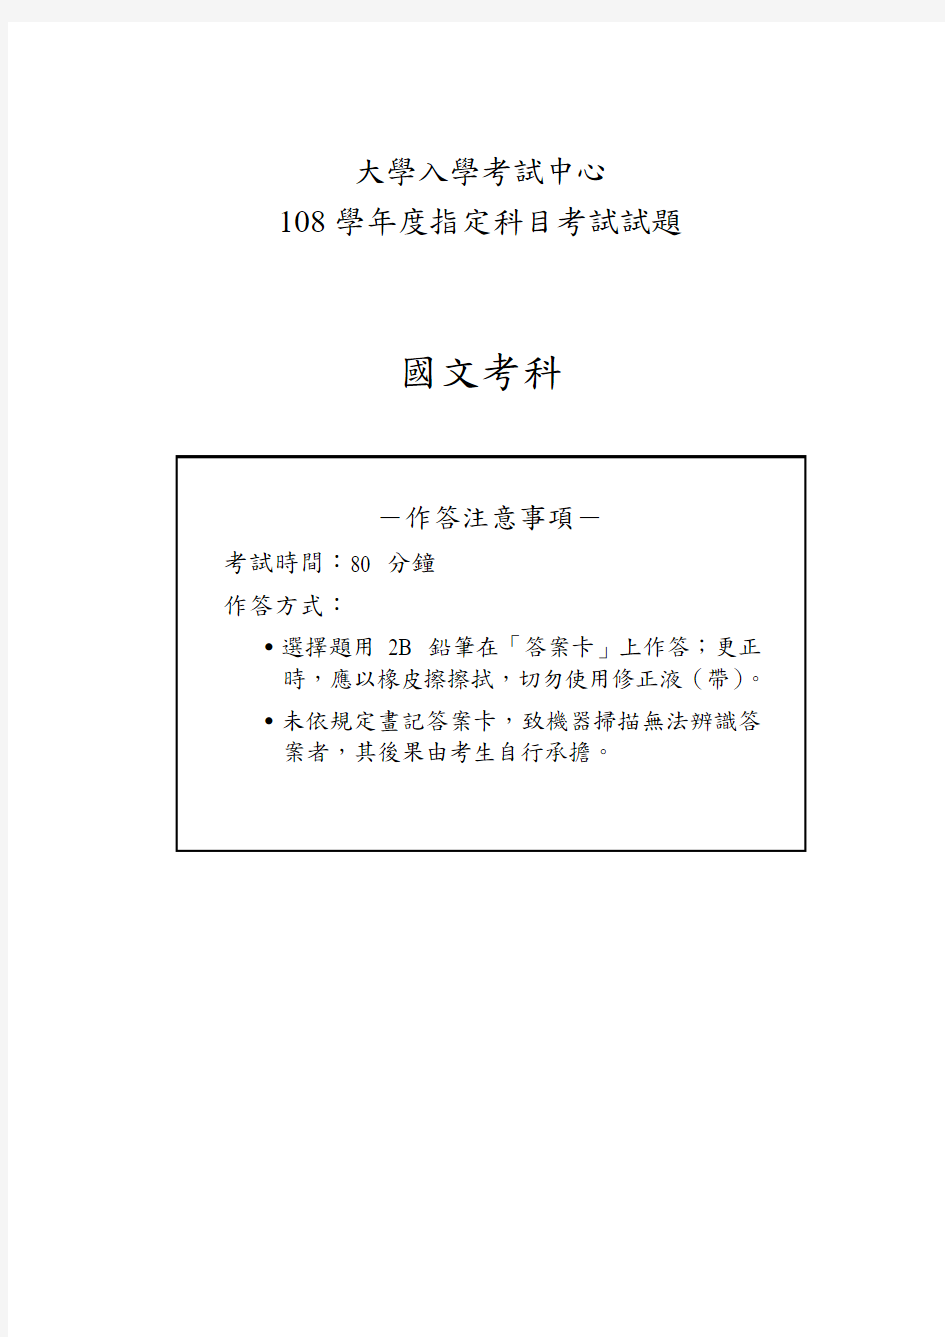 2019台湾大学入学考试试题01-108指考国文试卷定稿